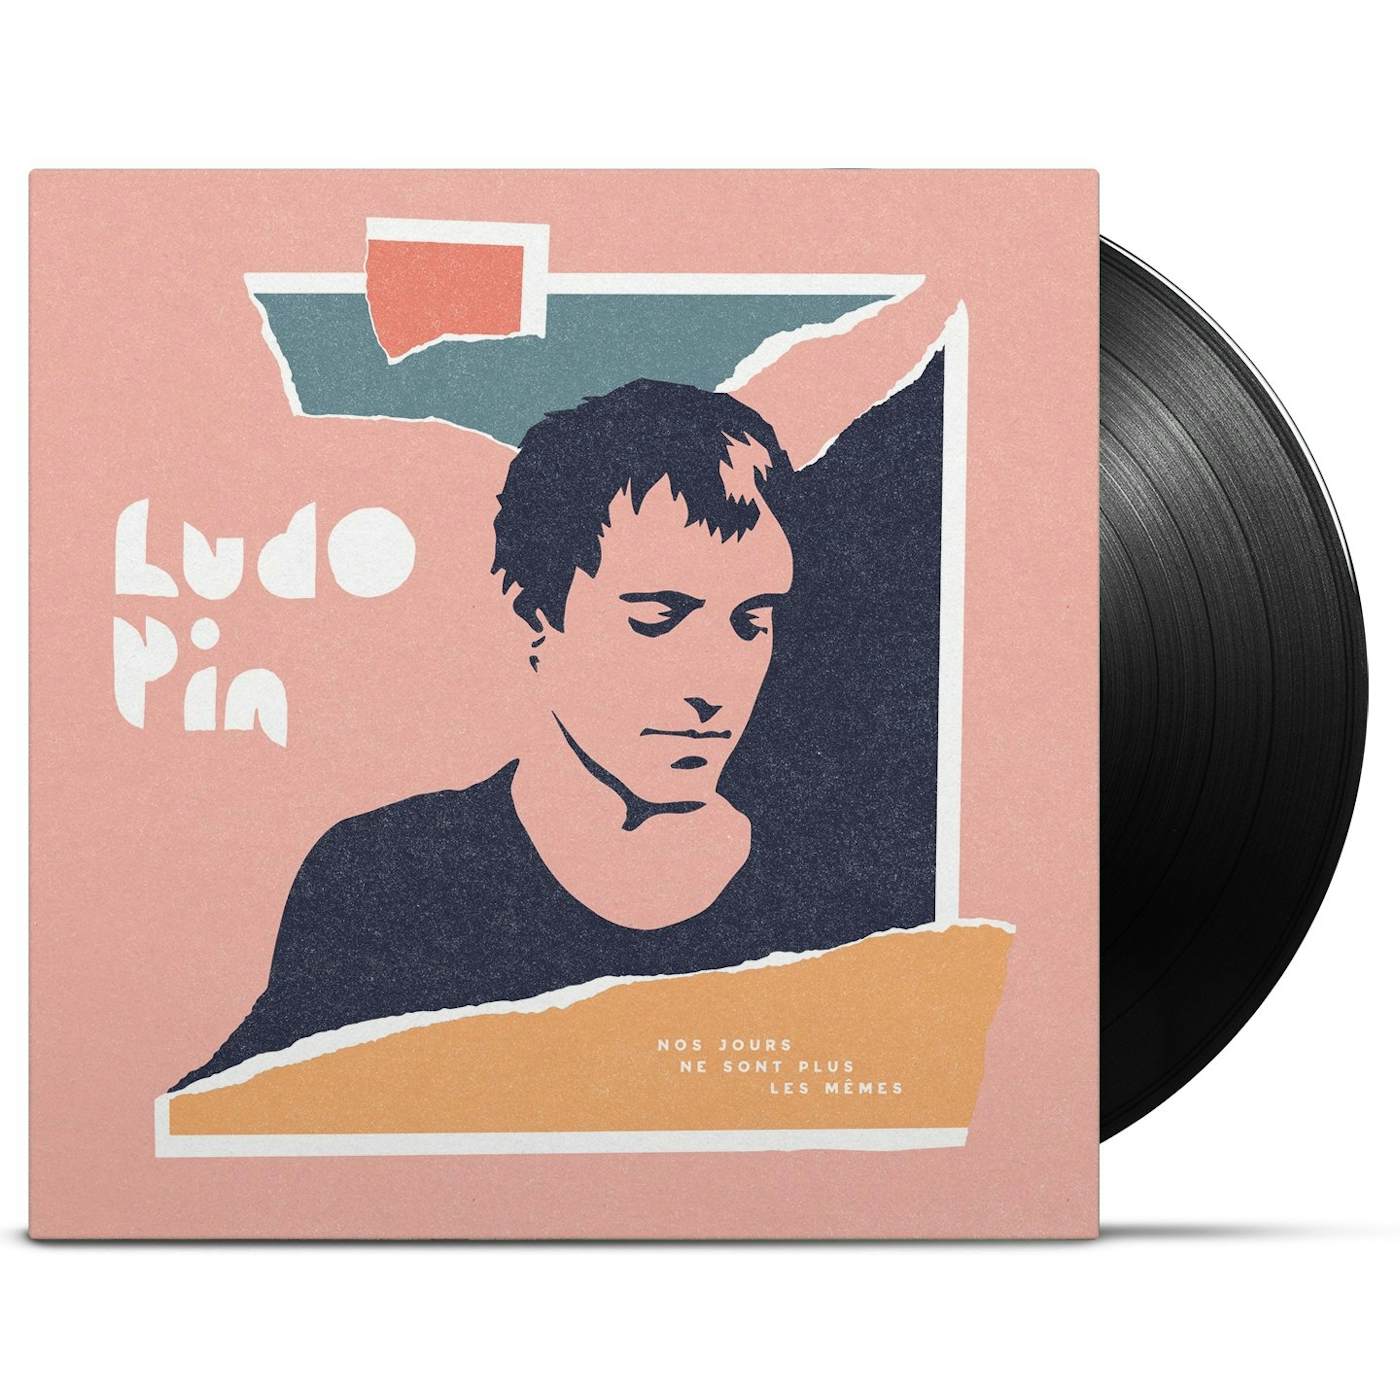 Ludo Pin / Nos jours ne sont plus les mêmes - LP Vinyl